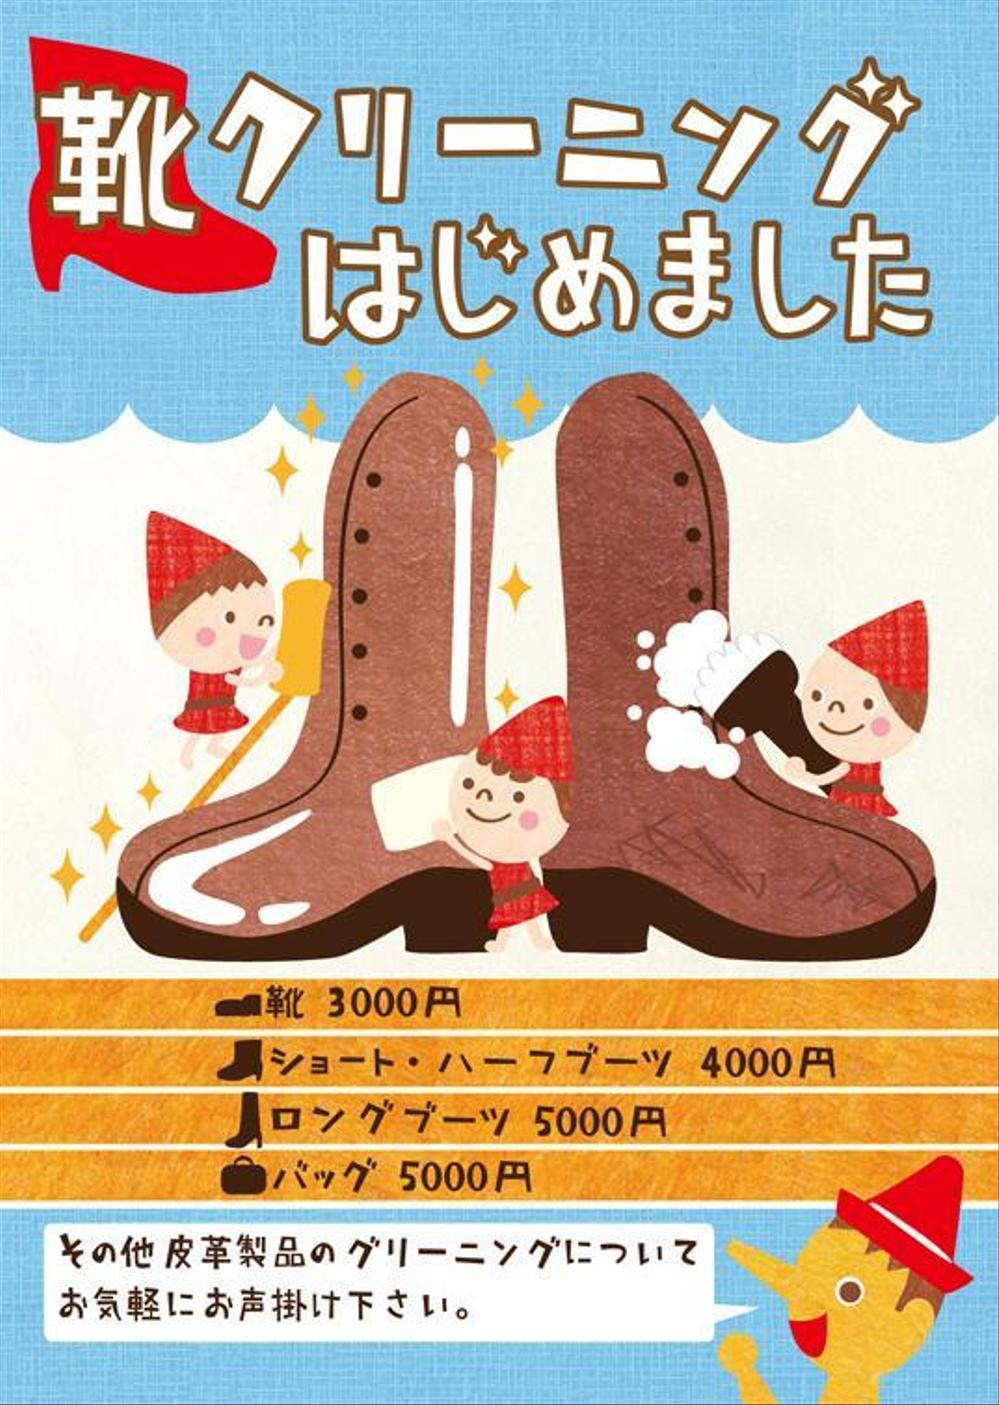 靴修理店「クイックサービス・ピノキオ」新規サービス〝靴クリーニング”料金表付ポスター